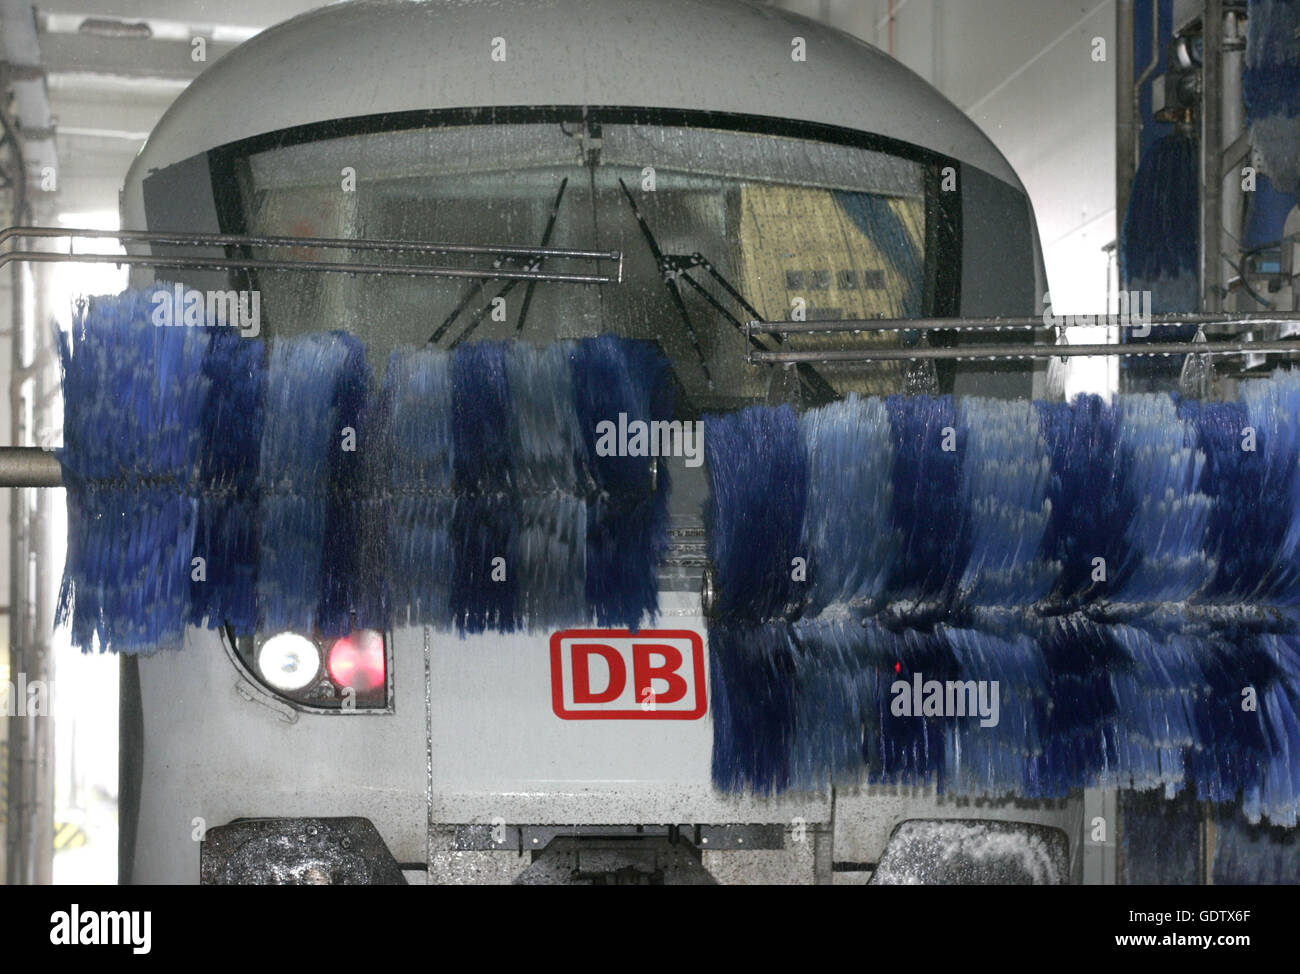 Washday at Deutsche Bahn Stock Photo